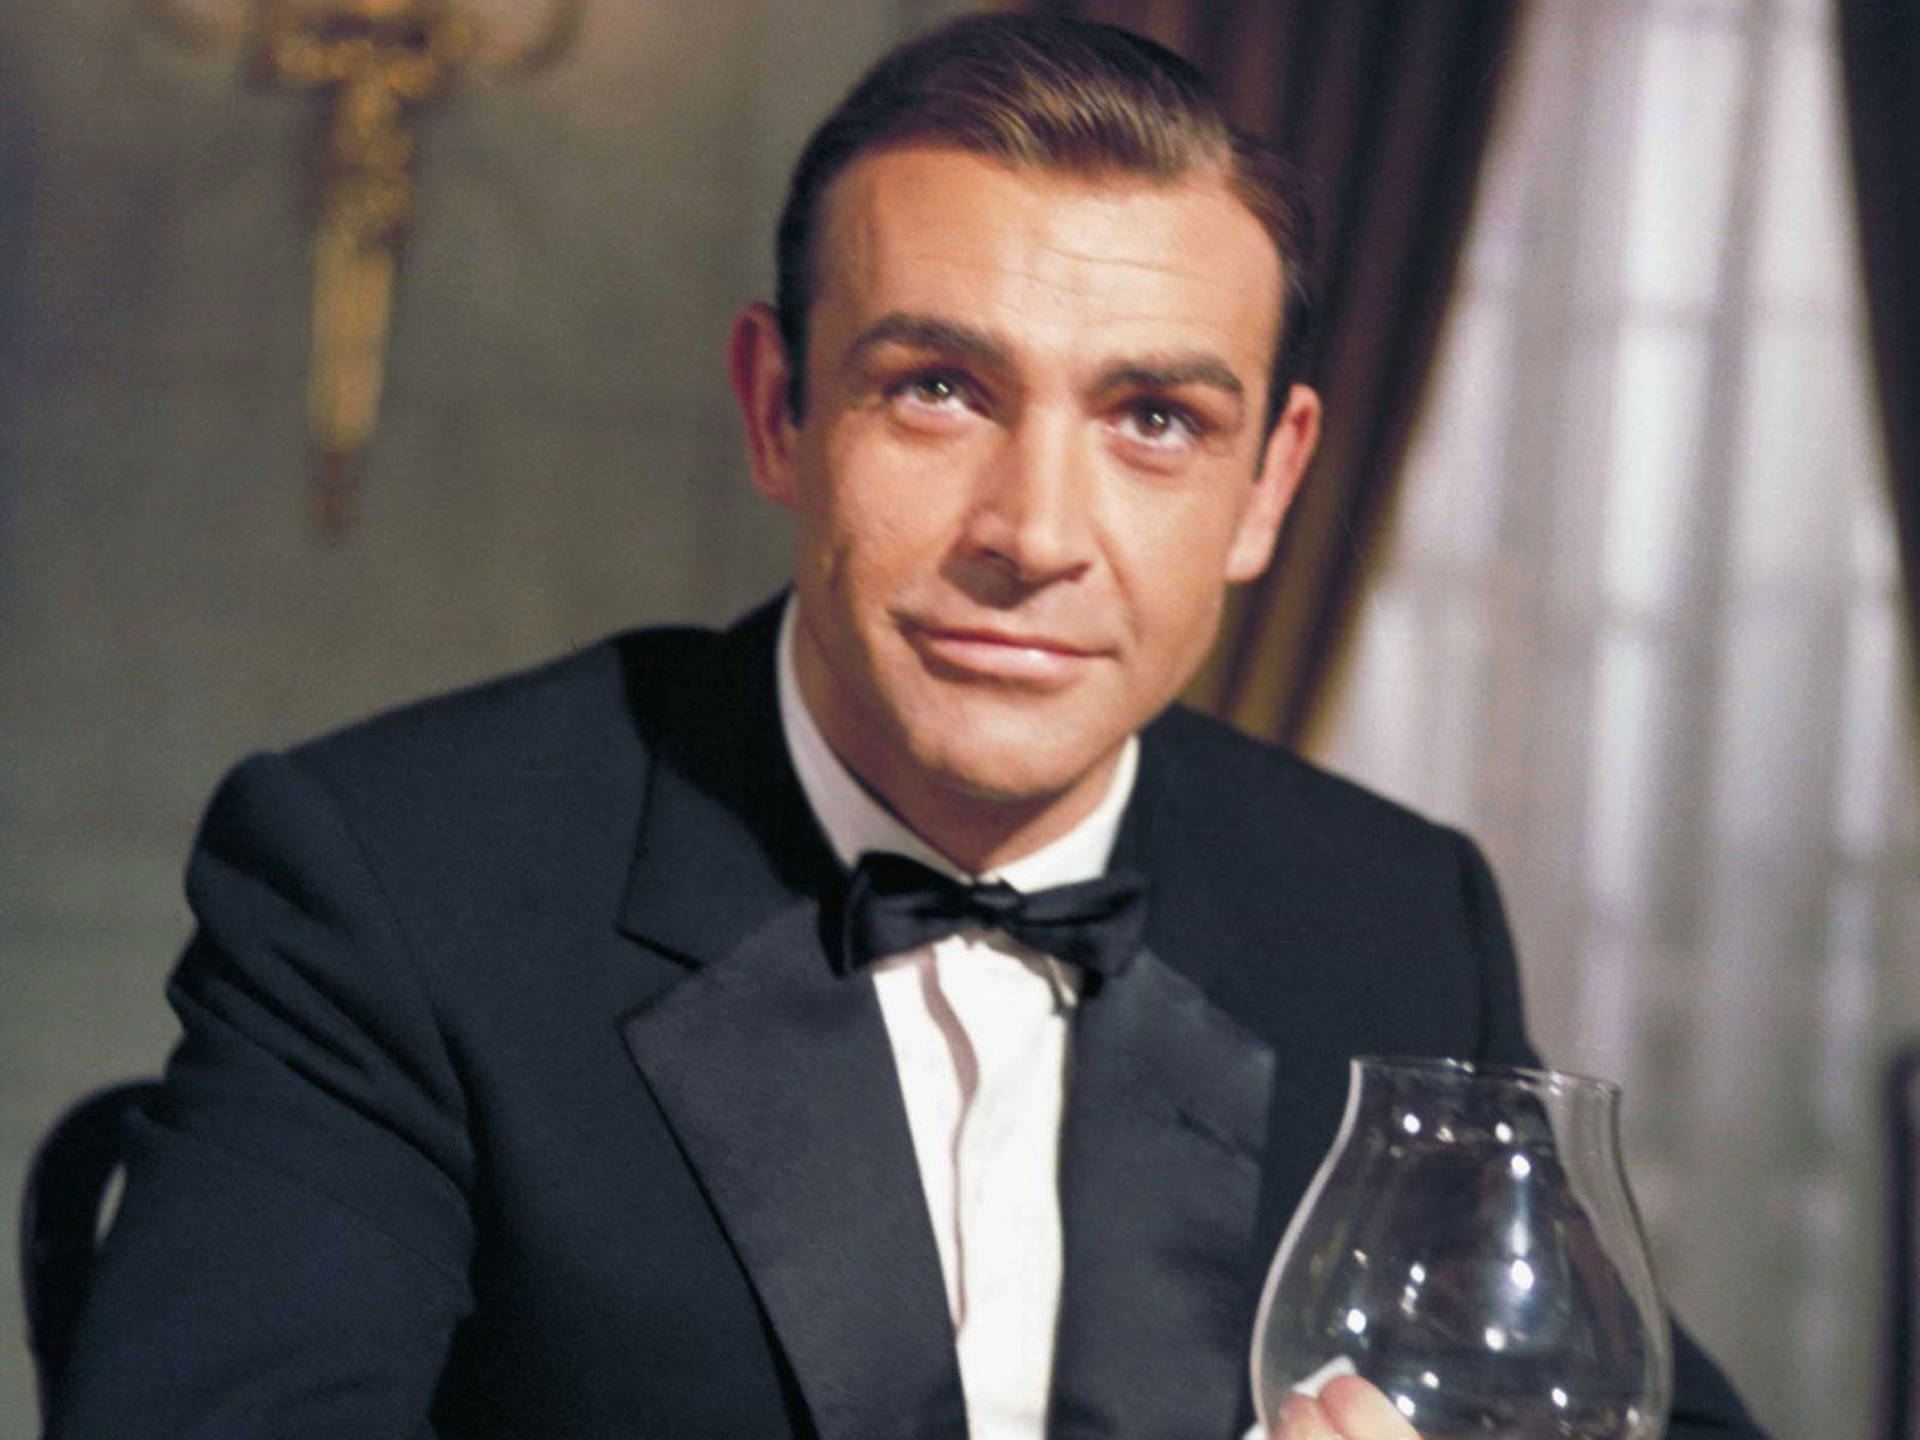 Young Sean Connery As James Bond